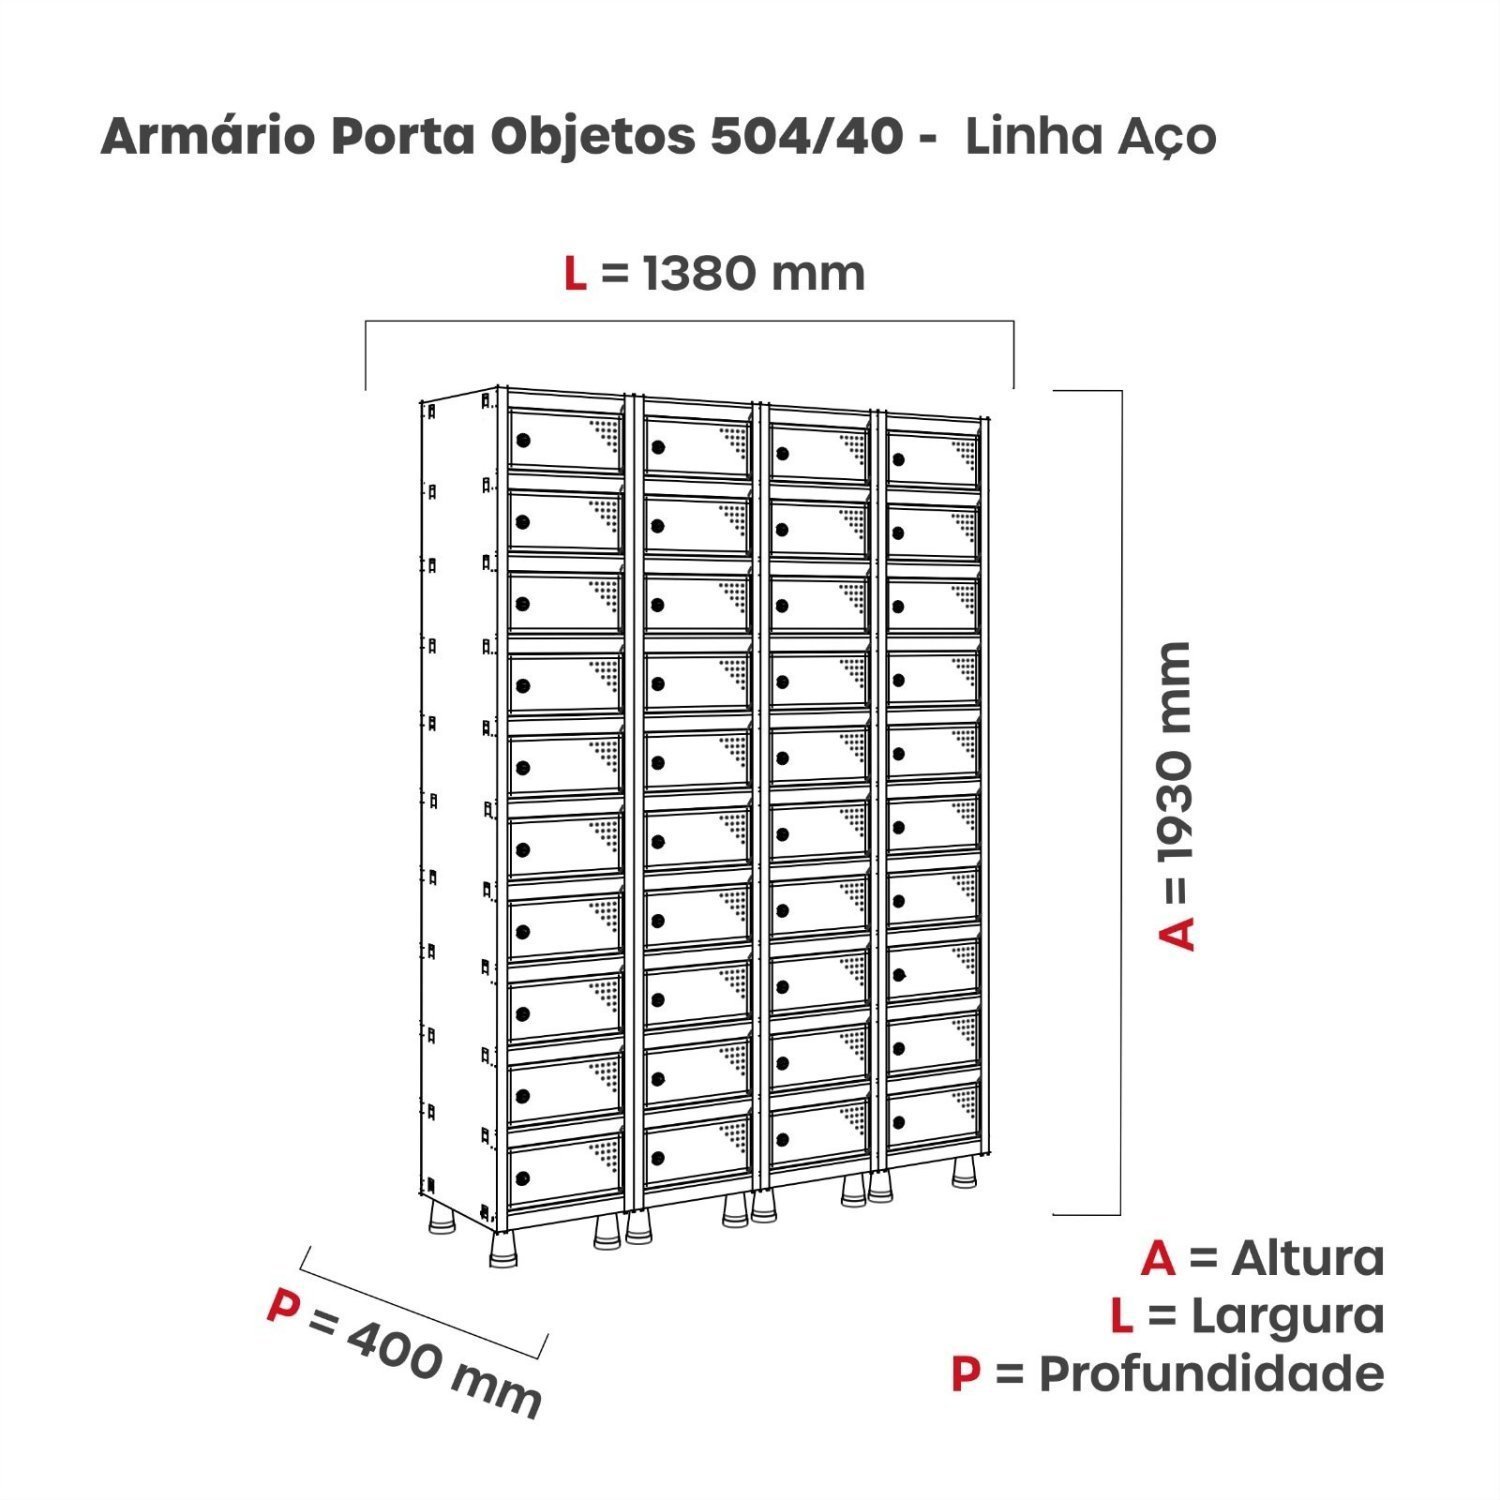 Armario Caixa Postal 40 Portas Aço ACPP 504/40  - 4